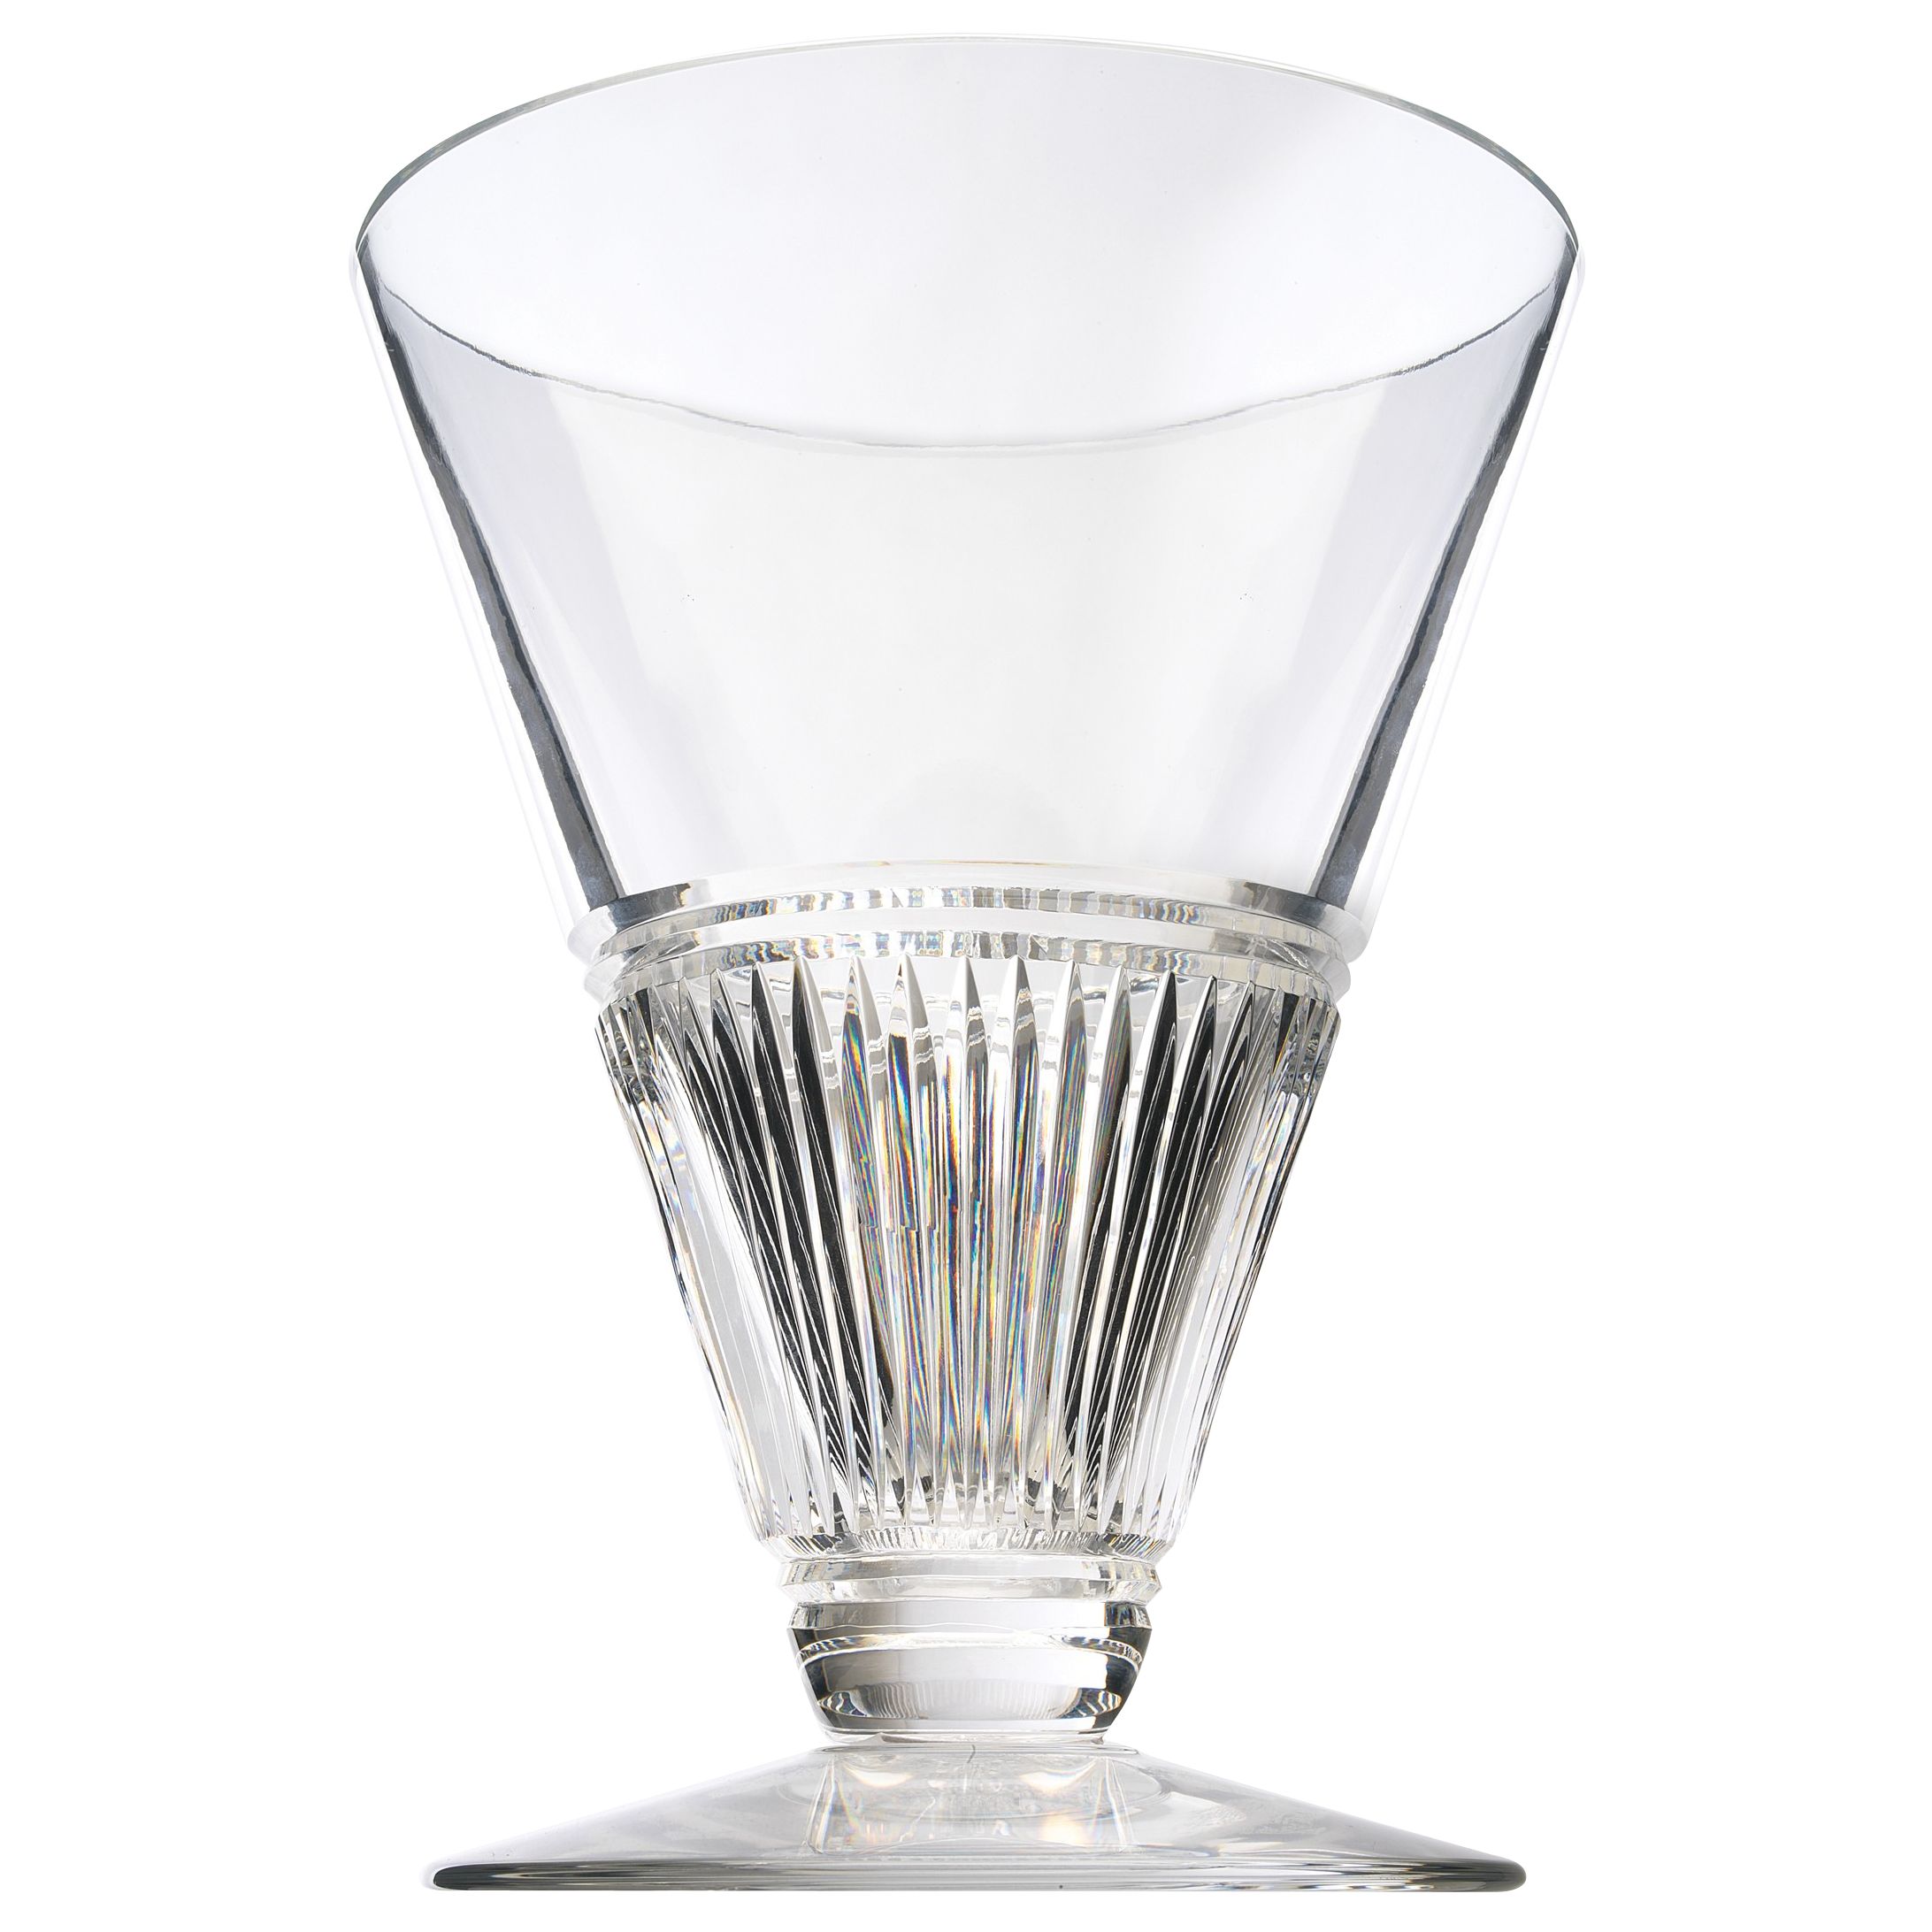 Waterford Crystal Jasper Conran Eternal Vase,